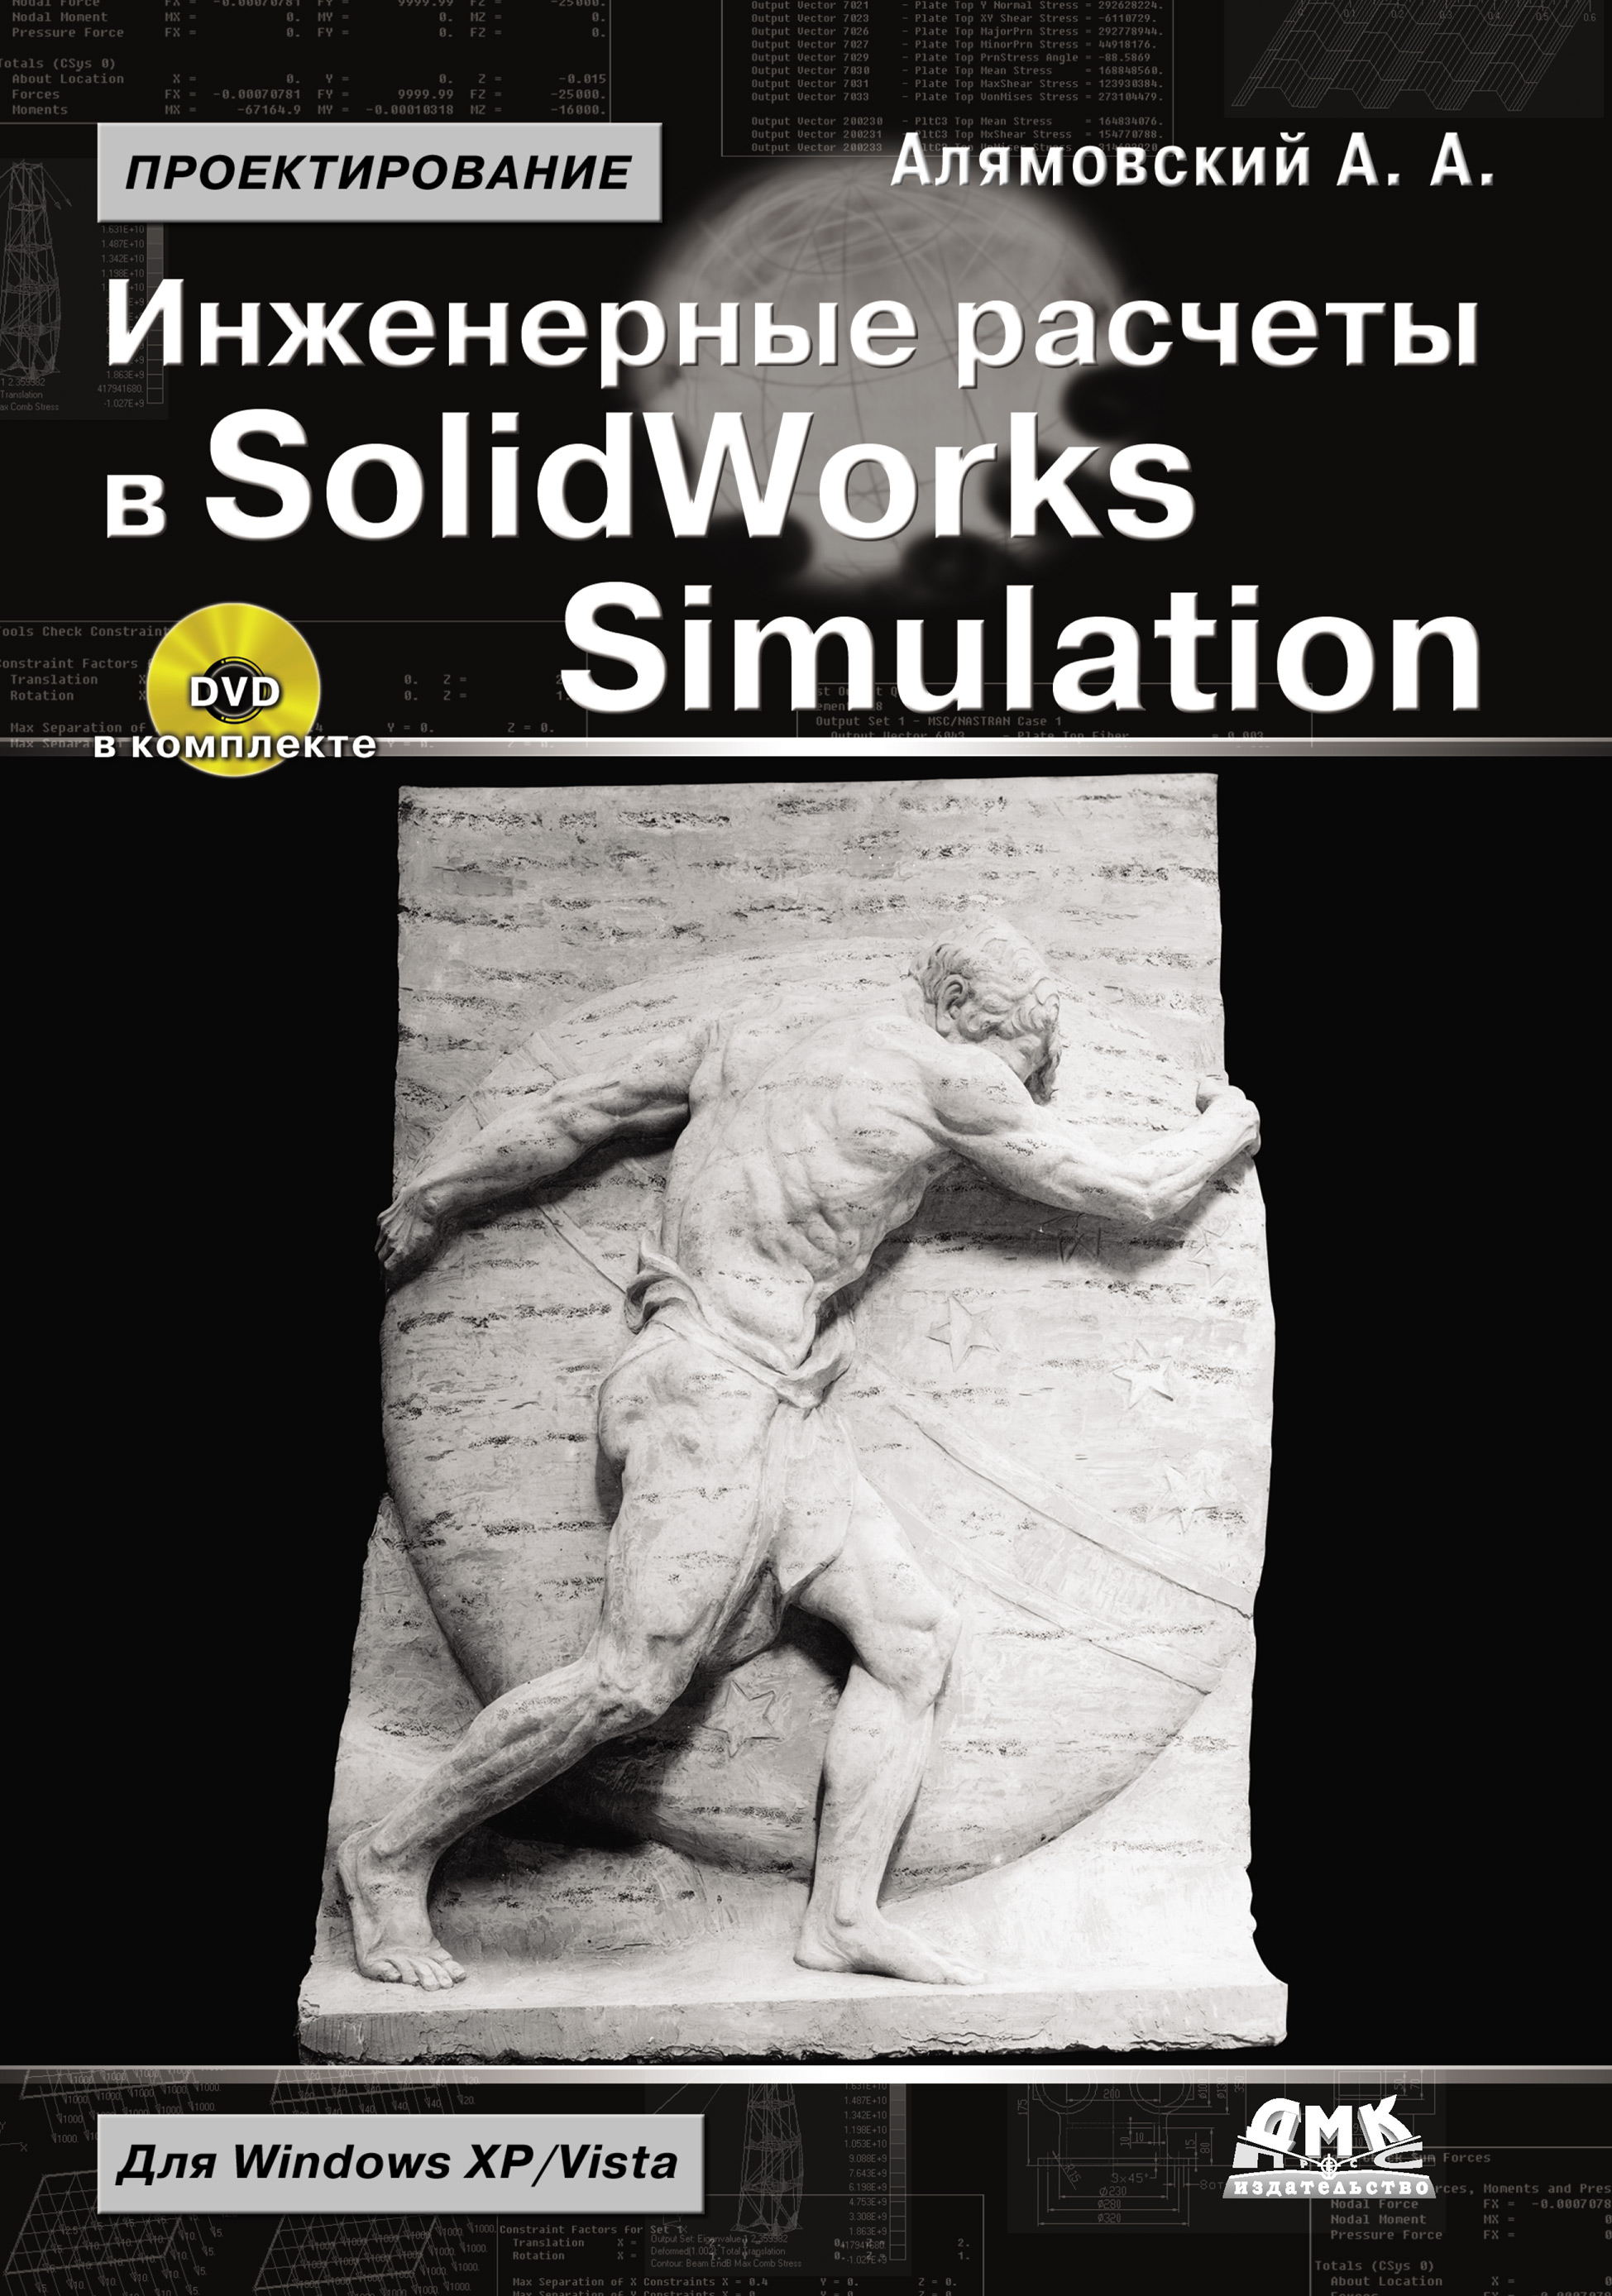 Книга Проектирование (ДМК Пресс) Инженерные расчеты в SolidWorks Simulation созданная Андрей Алямовский может относится к жанру программы, техническая литература. Стоимость электронной книги Инженерные расчеты в SolidWorks Simulation с идентификатором 7637326 составляет 279.00 руб.